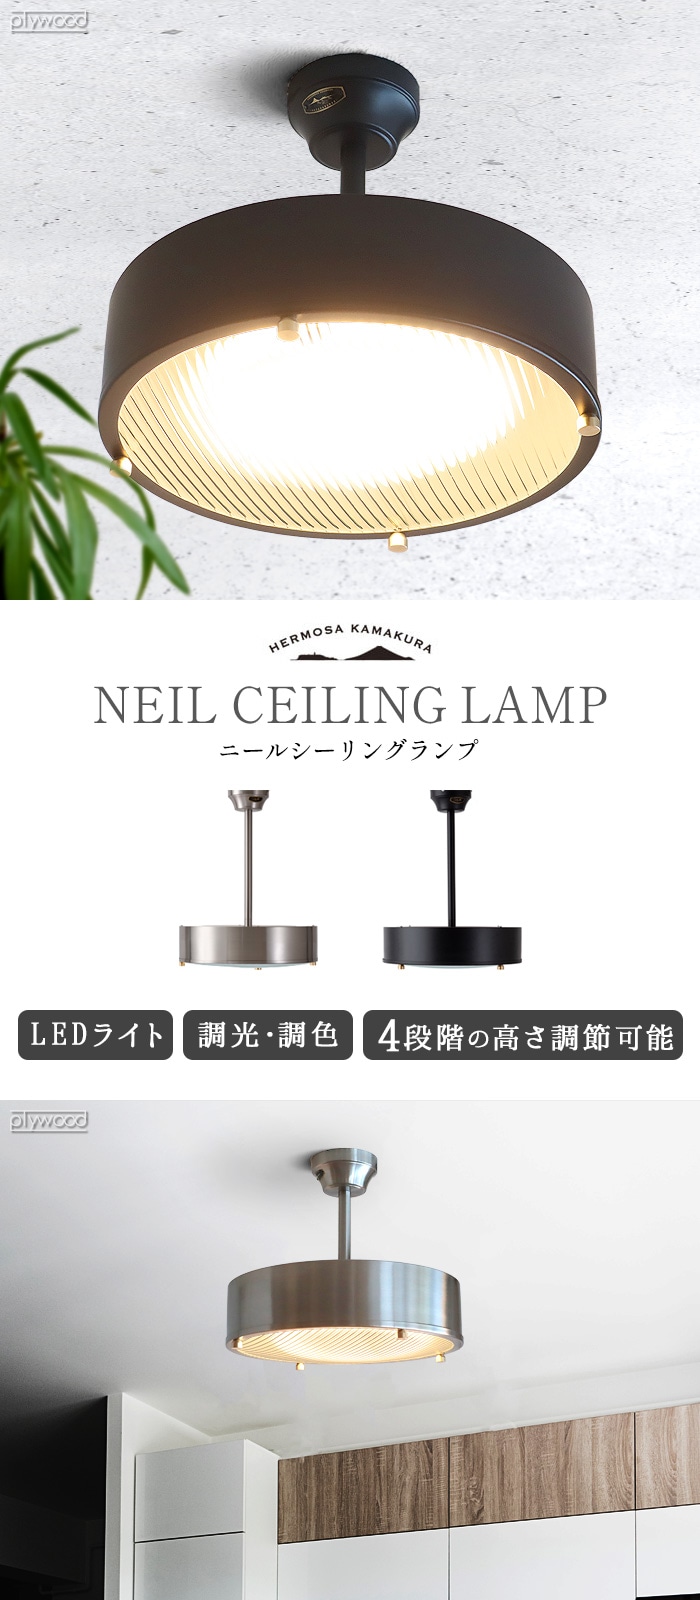 ハモサ ニール シーリングランプ ブラック HERMOSA NEIL CEILING LAMP CM-009-plywood